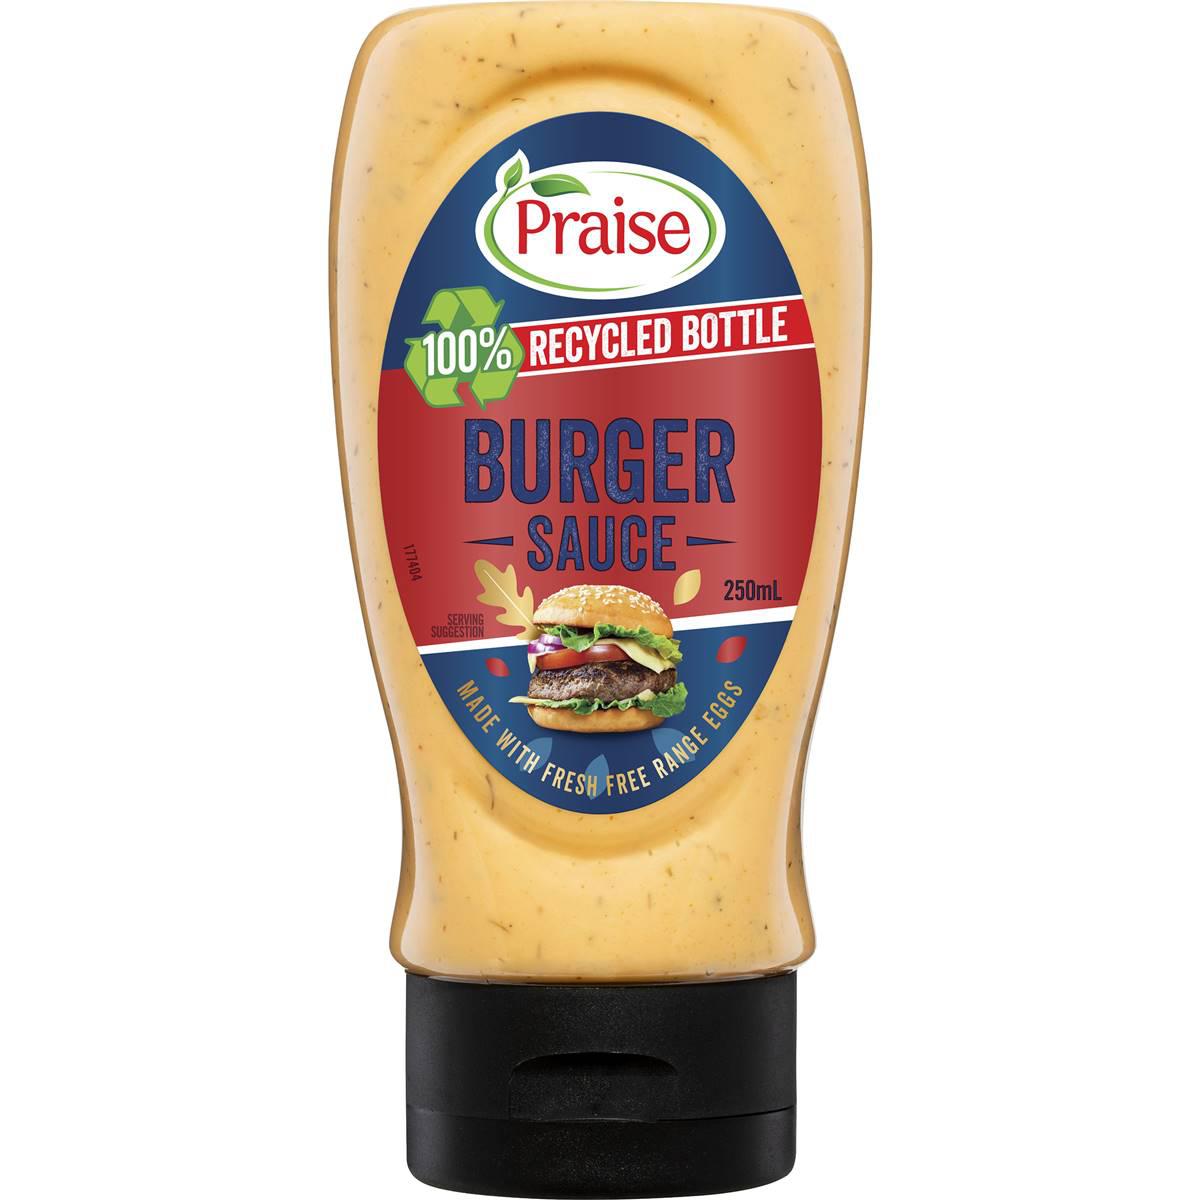 Praise Burger Sauce Aioli 250ml